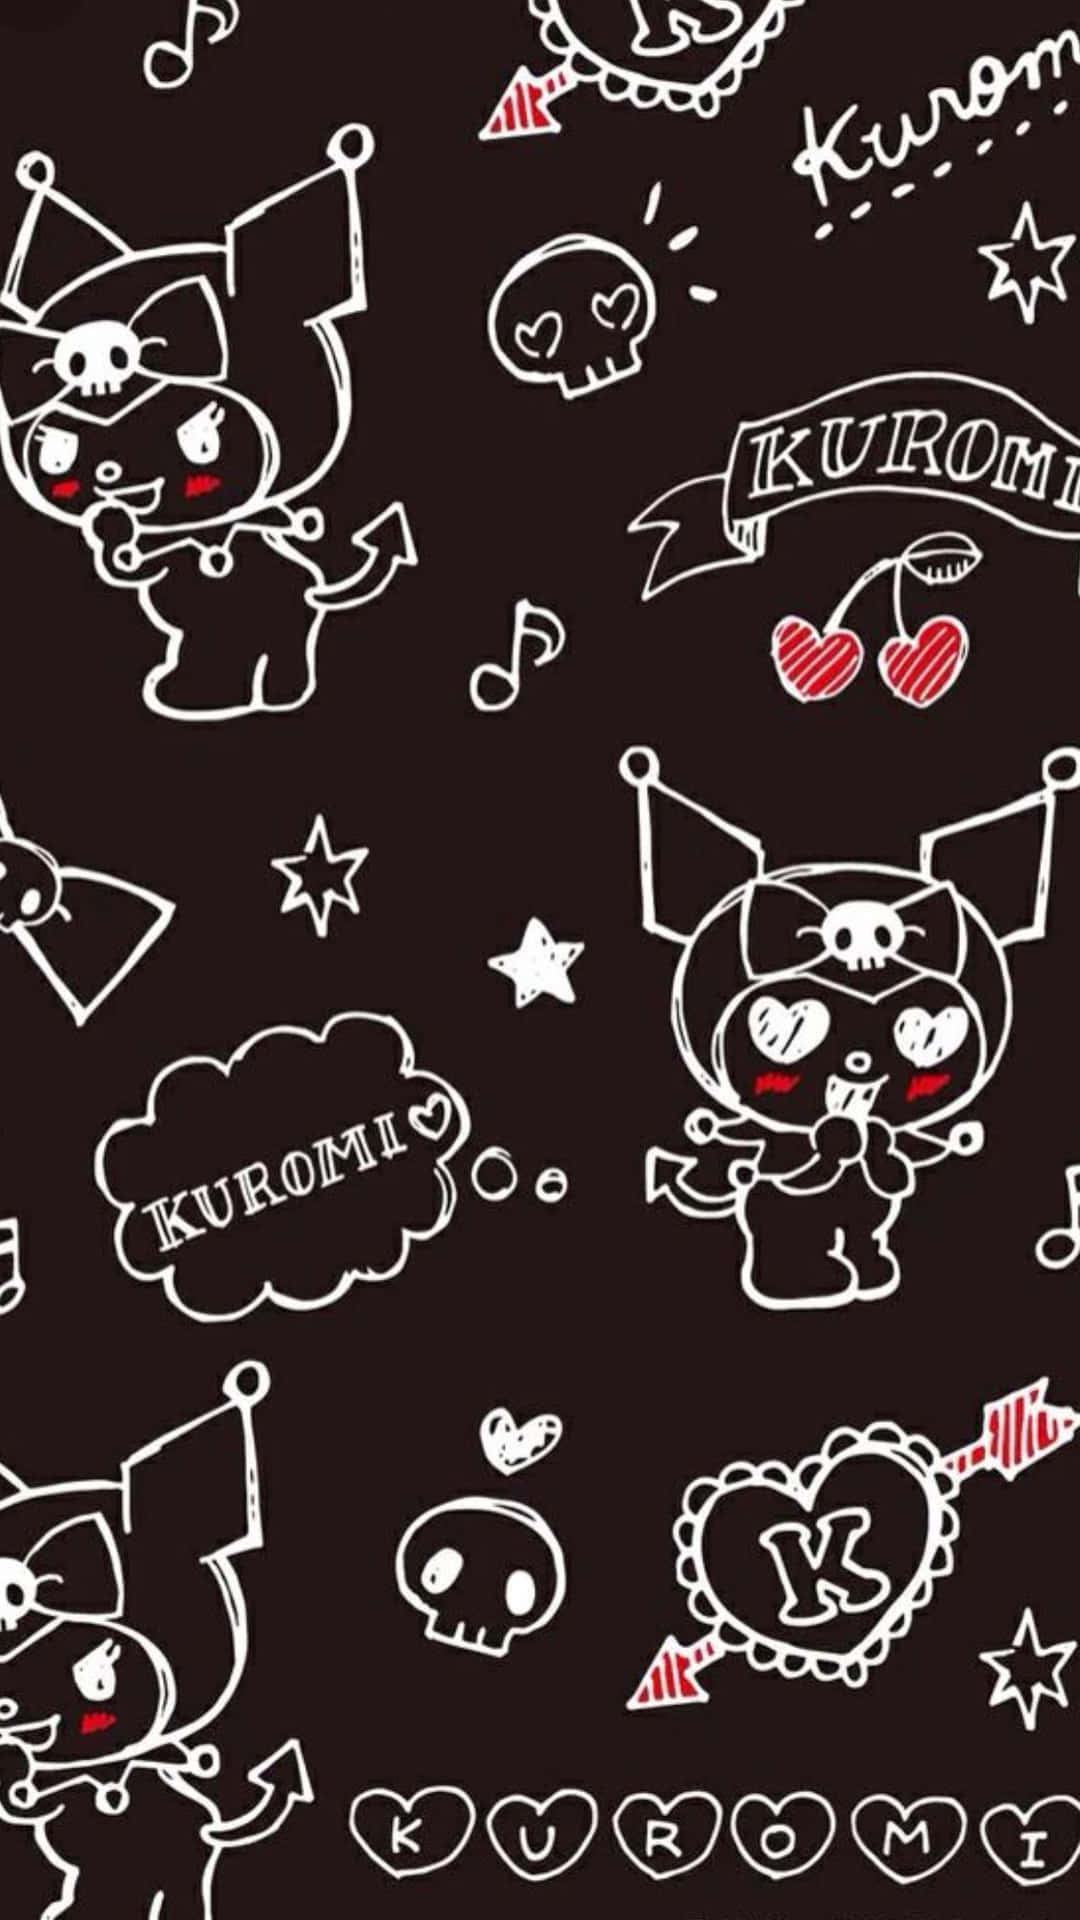 Nếu bạn đang muốn tìm kiếm hình nền Kuromi độc đáo trên nền đen cho chiếc iPhone yêu thích của mình, thì bức ảnh này hoàn toàn đáp ứng được những yêu cầu của bạn. Với sự kết hợp hoàn hảo giữa màu đen và họa tiết bụi phấn độc đáo, Kuromi iPhone wallpaper on black sẽ khiến bạn phải ngẩn ngơ trước vẻ đẹp của nó.